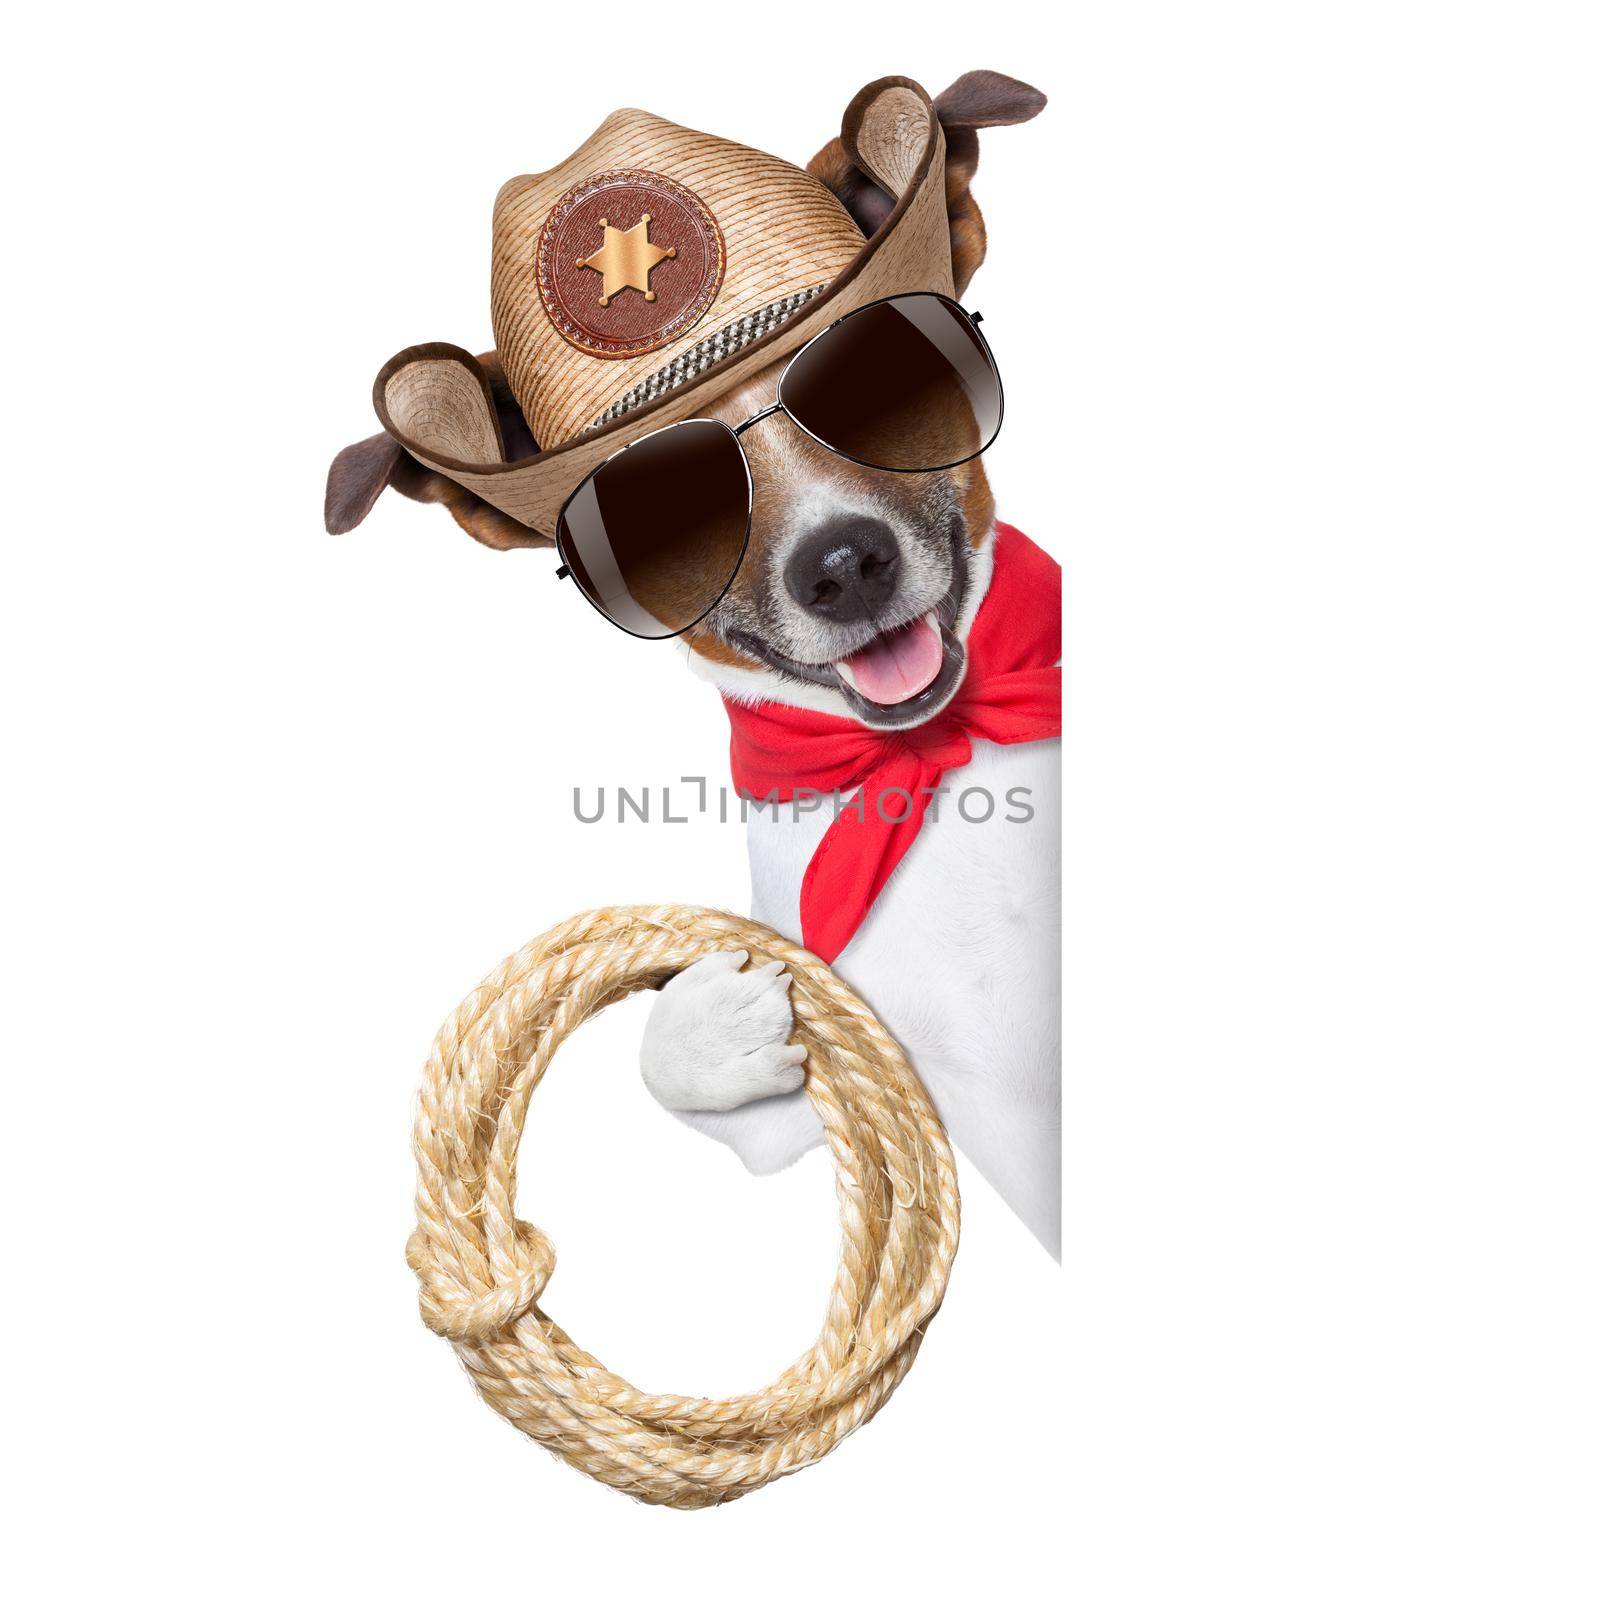 cowboy dog by Brosch